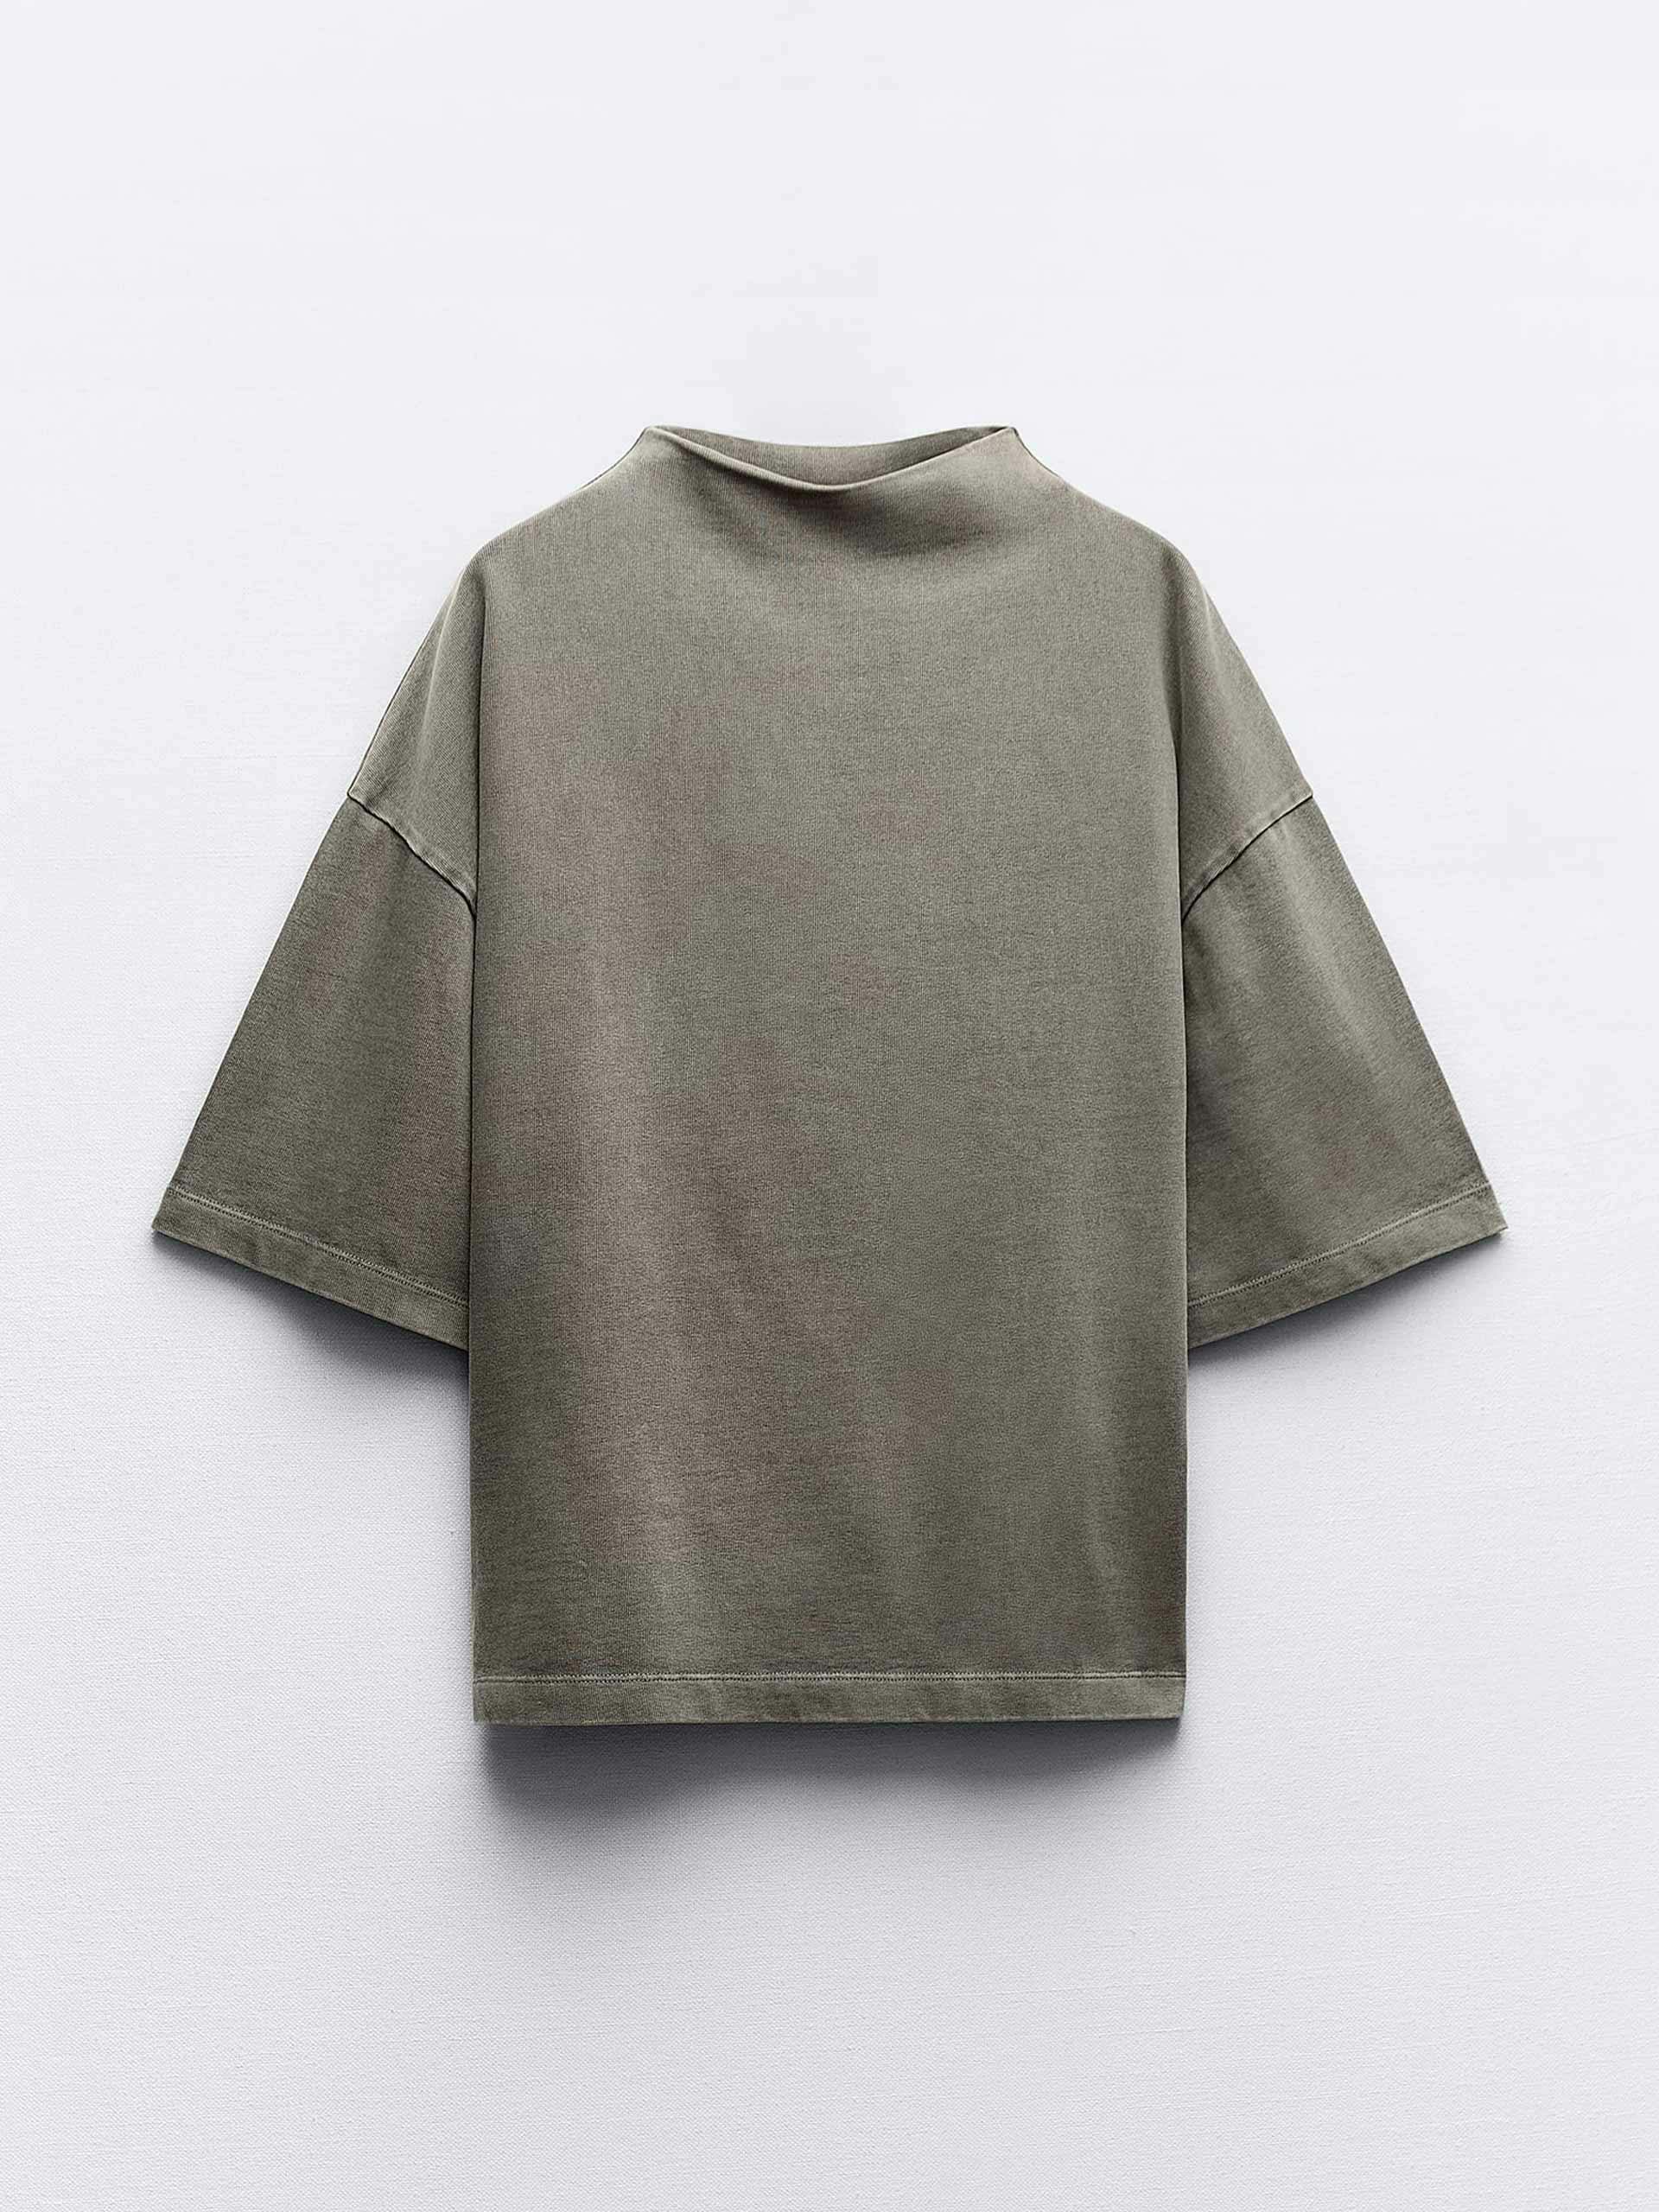 Clean cotton dark grey t-shirt